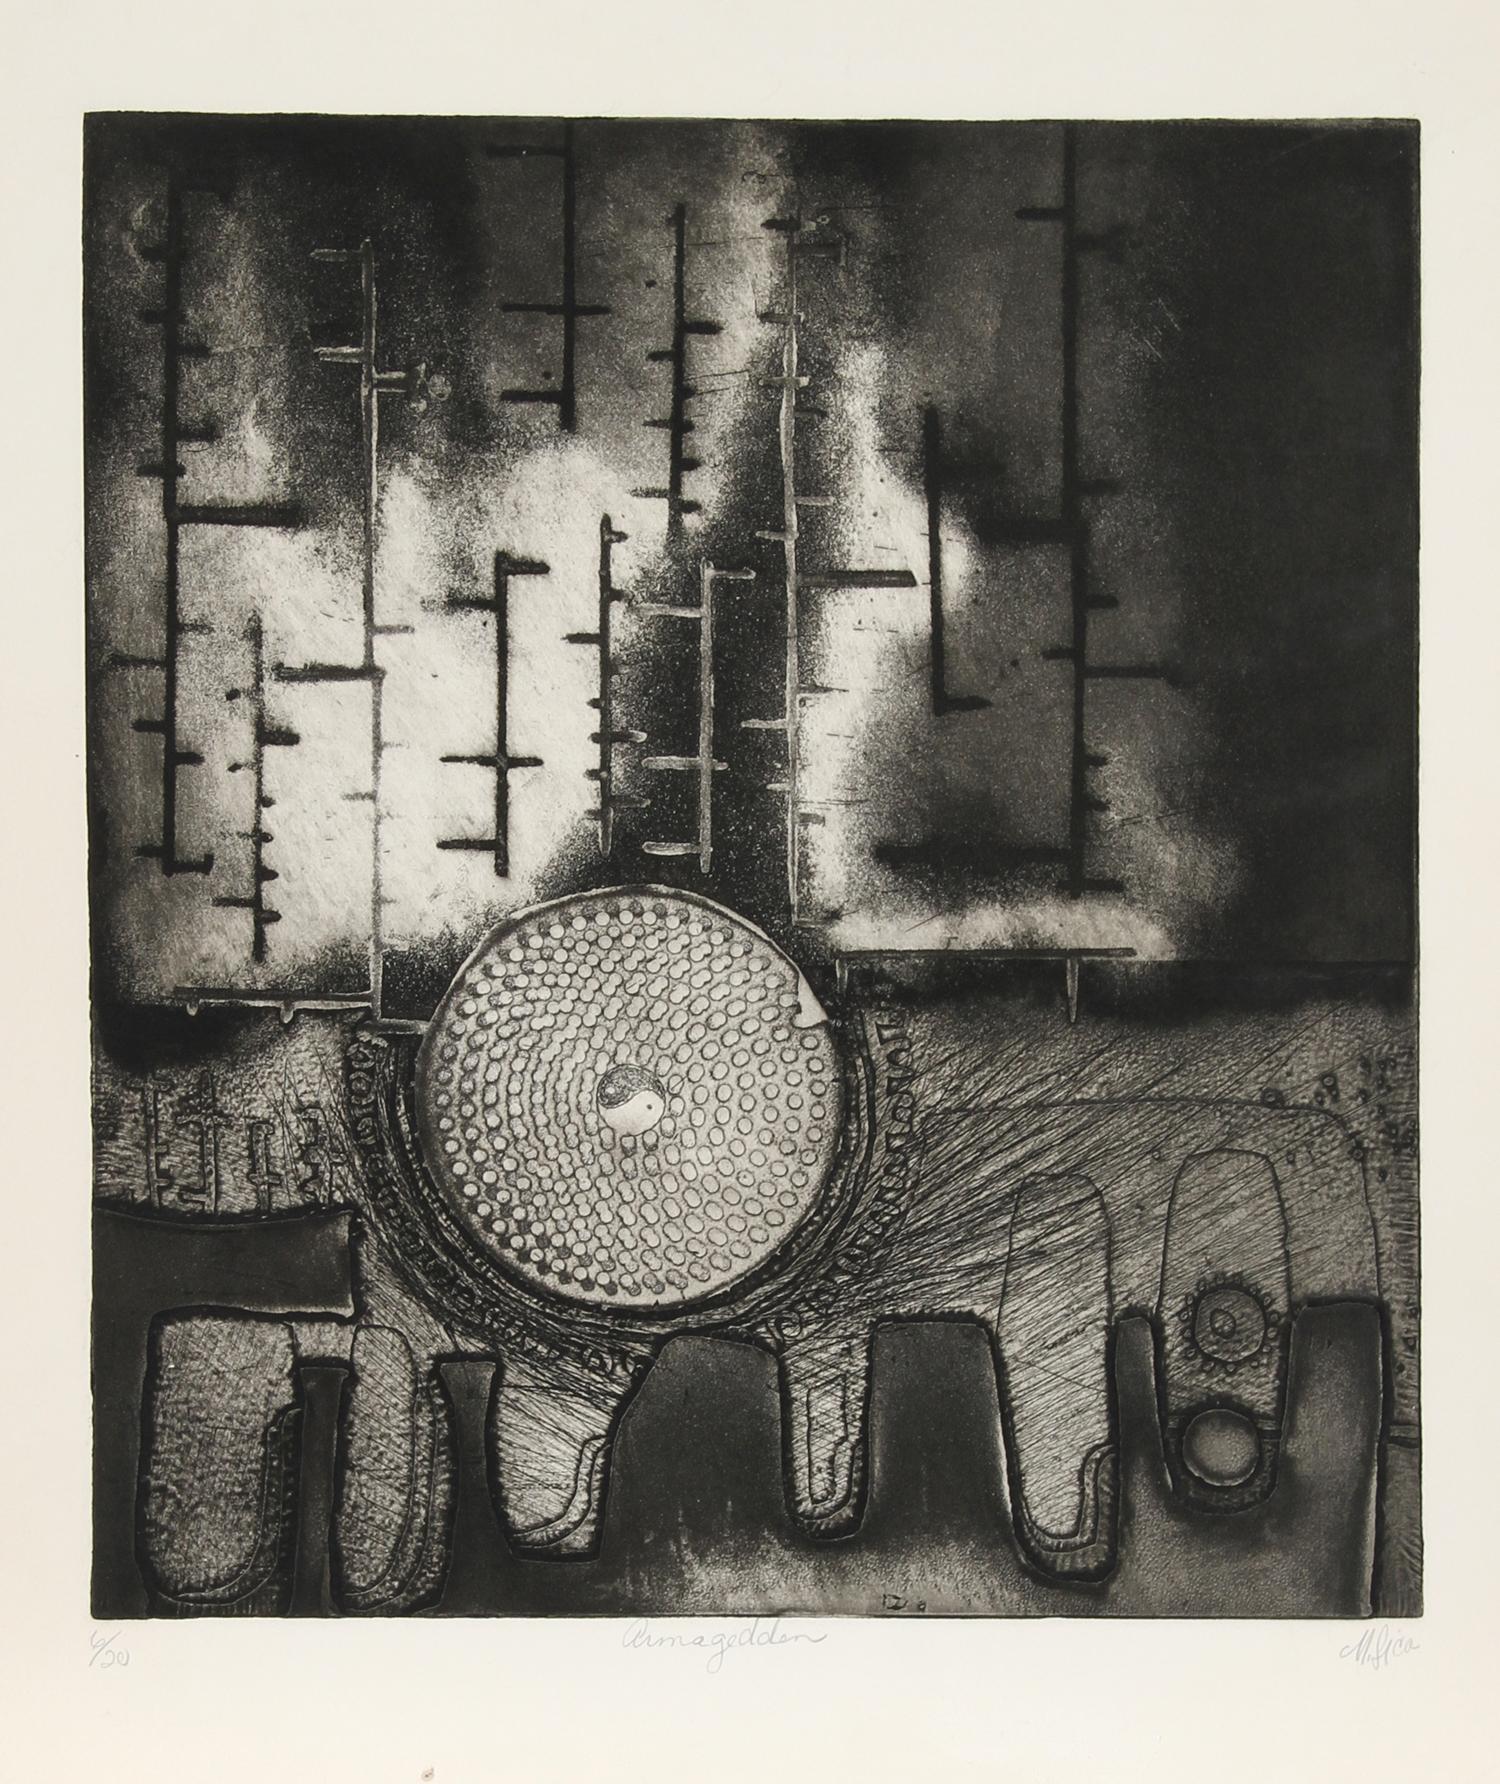 Künstler: SICA, Amerikaner (1932 - )
Titel: Armageddon
Medium: Aquatinta-Radierung, mit Bleistift signiert und nummeriert
Ausgabe: 6/20
Bildgröße: 18 x 16 Zoll
Größe: 22 Zoll x 20 Zoll (55,88 cm x 50,8 cm)